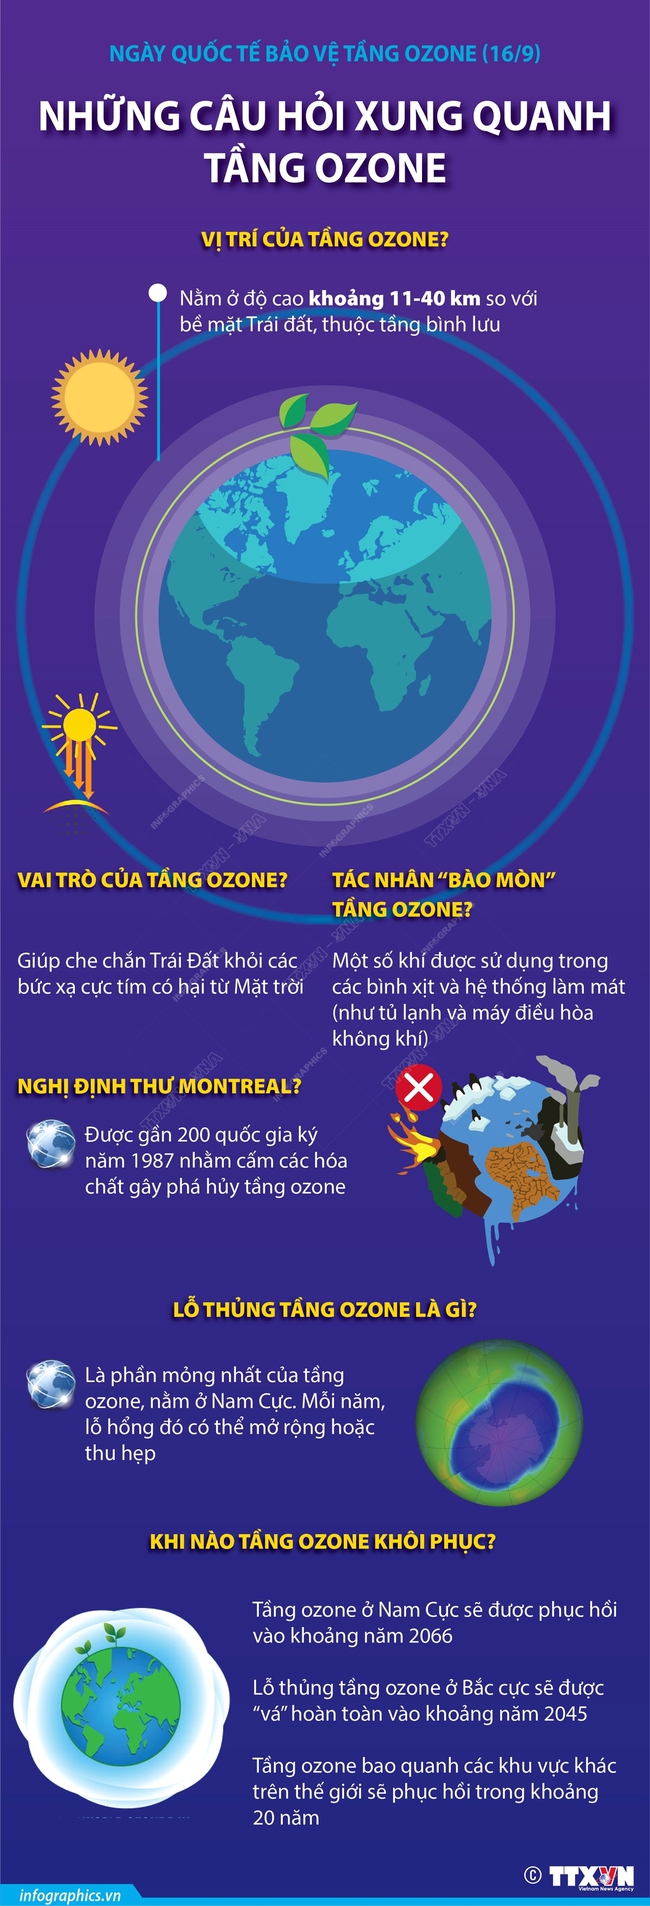 Ngày Quốc tế Bảo vệ tầng ozone (16/9): Những câu hỏi xung quanh tầng ozone - Ảnh 1.